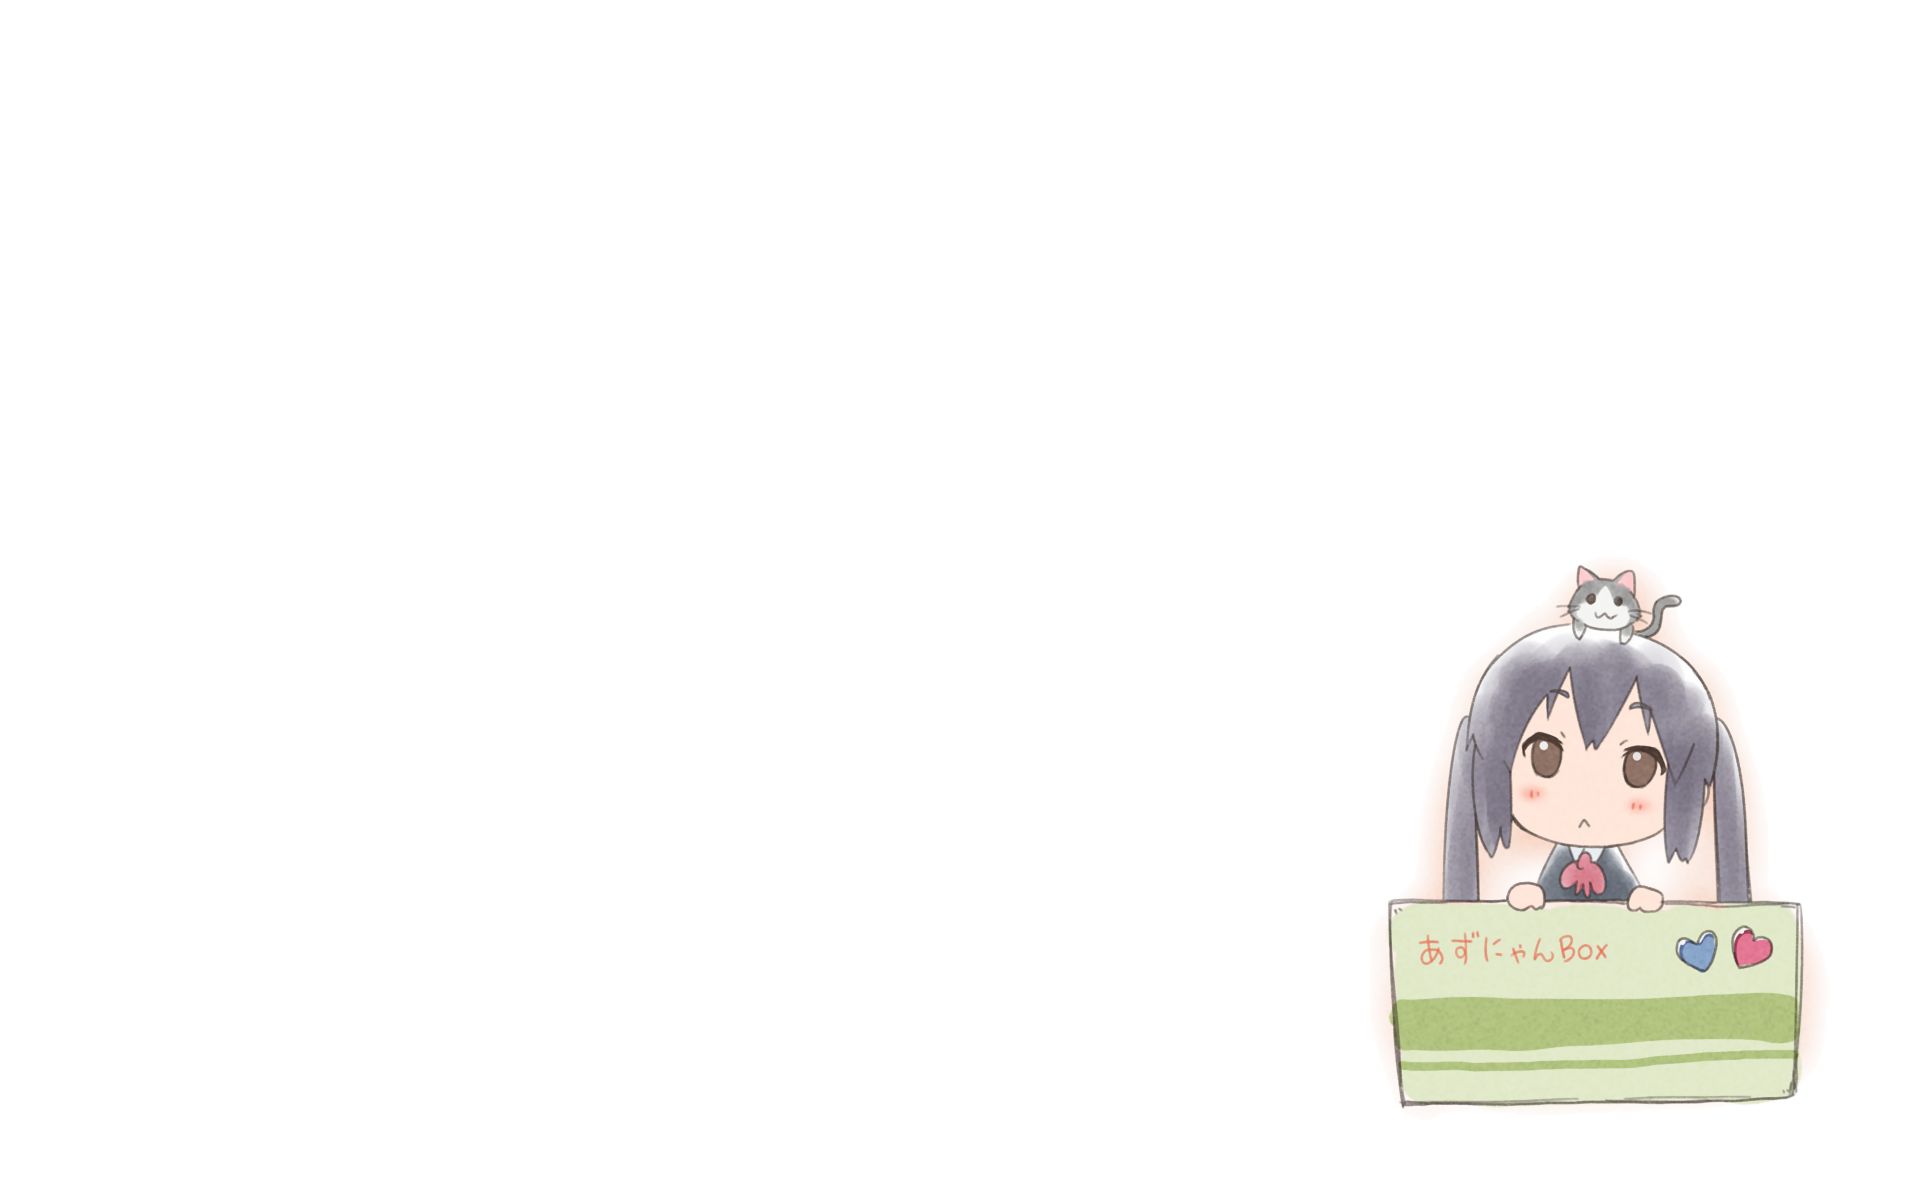 Descarga gratis la imagen Animado, ¡kon!, Azusa Nakano en el escritorio de tu PC